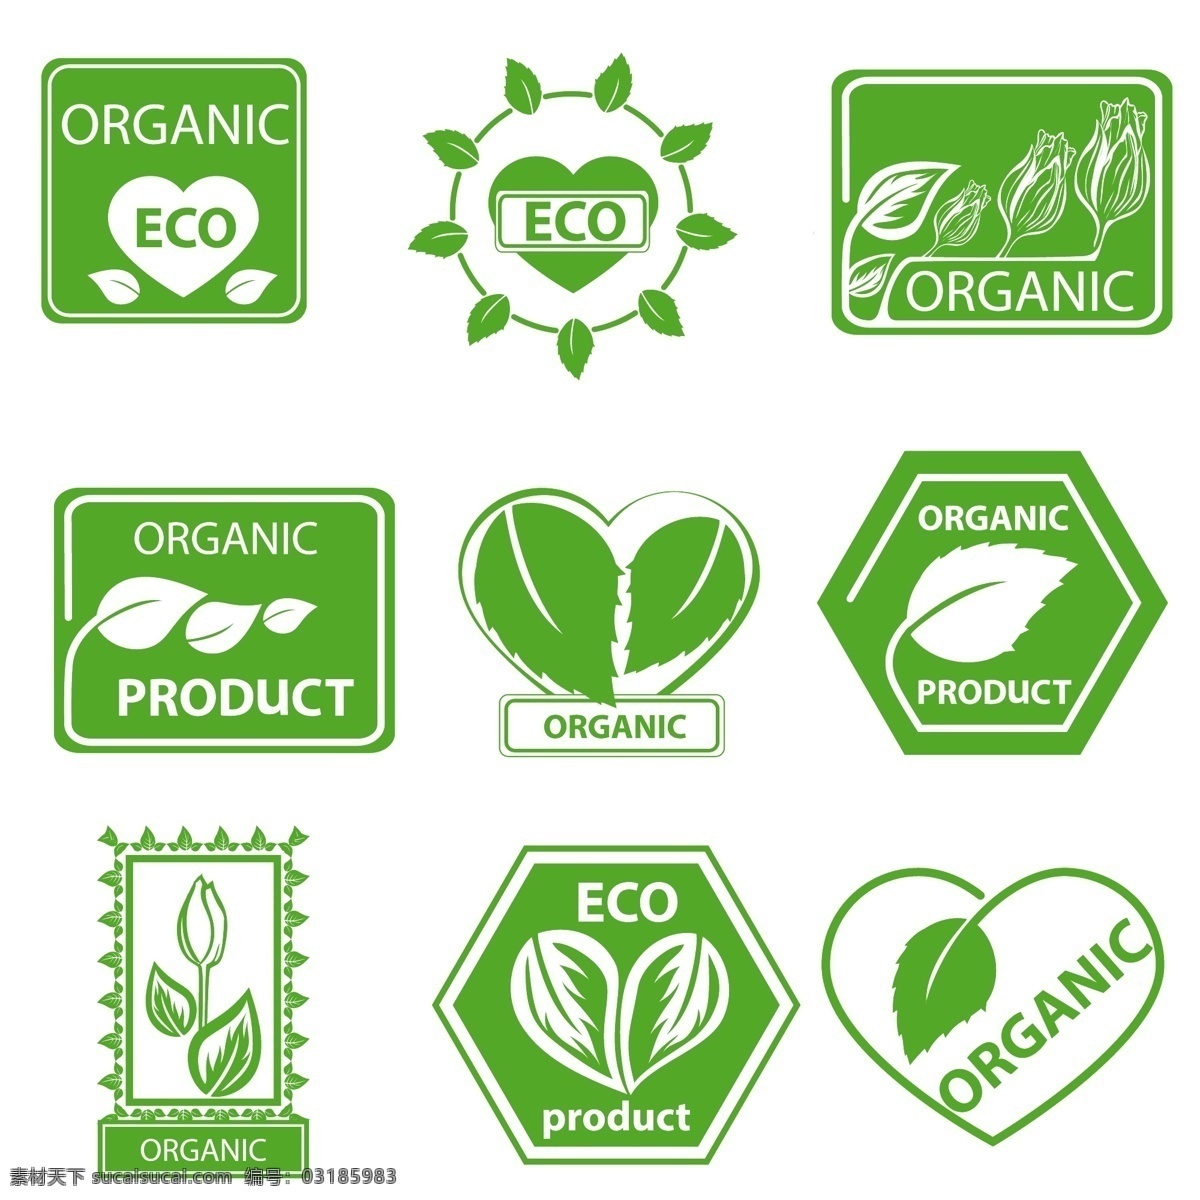 生态 环境保护 图标 绿叶 叶子 绿色植物图标 环保标志图标 生态环保 绿色环保 生态环境 环保logo 按钮图标 标志